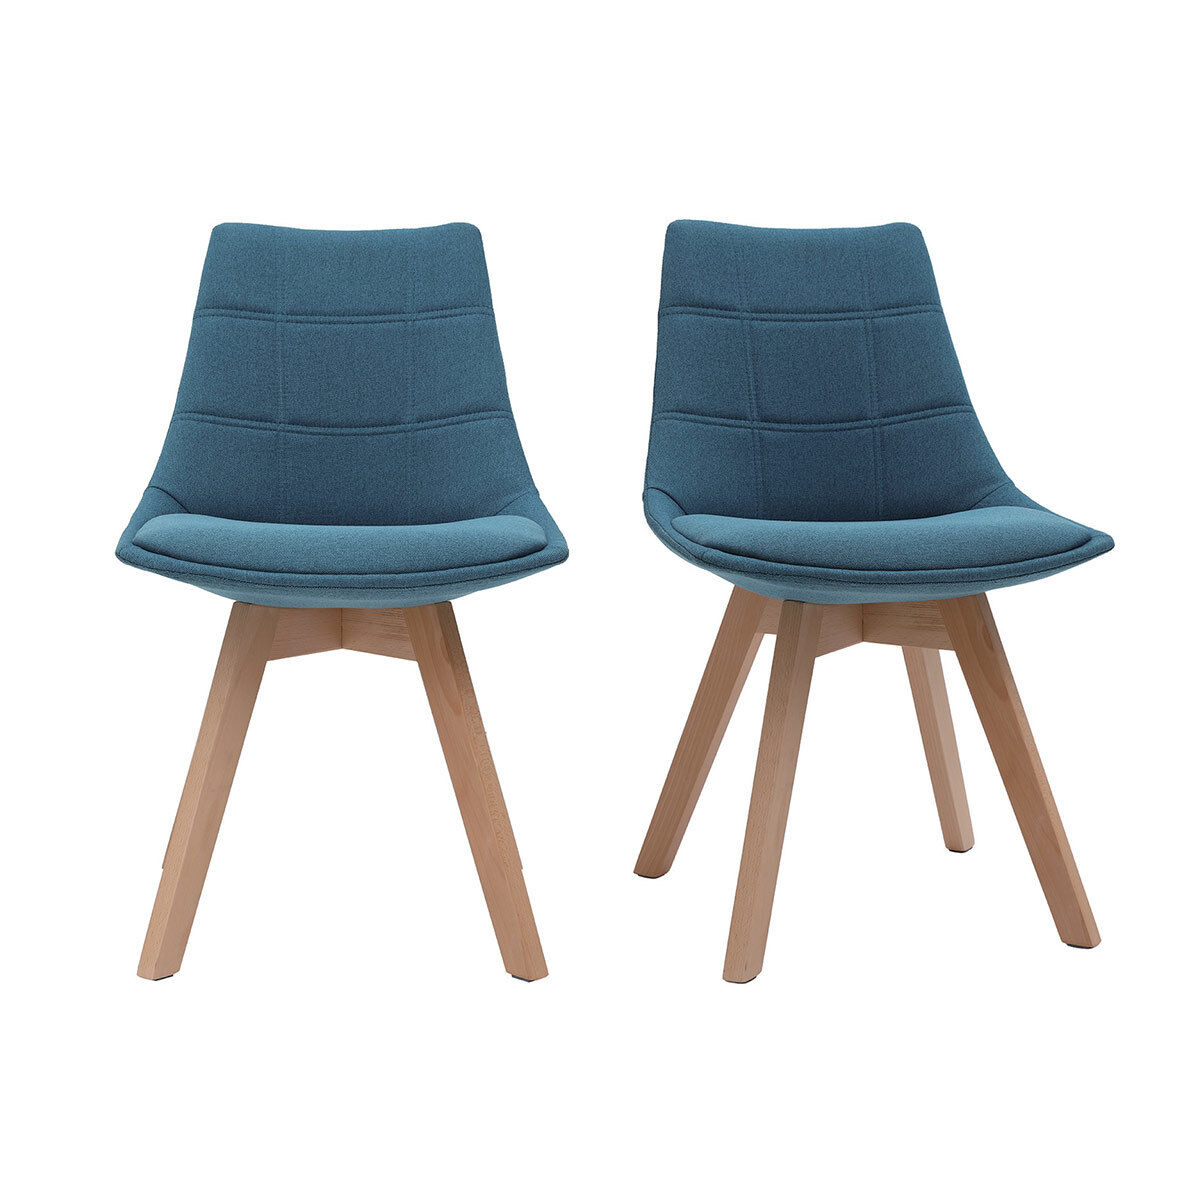 Miliboo Lote de 2 sillas diseño nórdico en tejido azul petróleo MATILDE